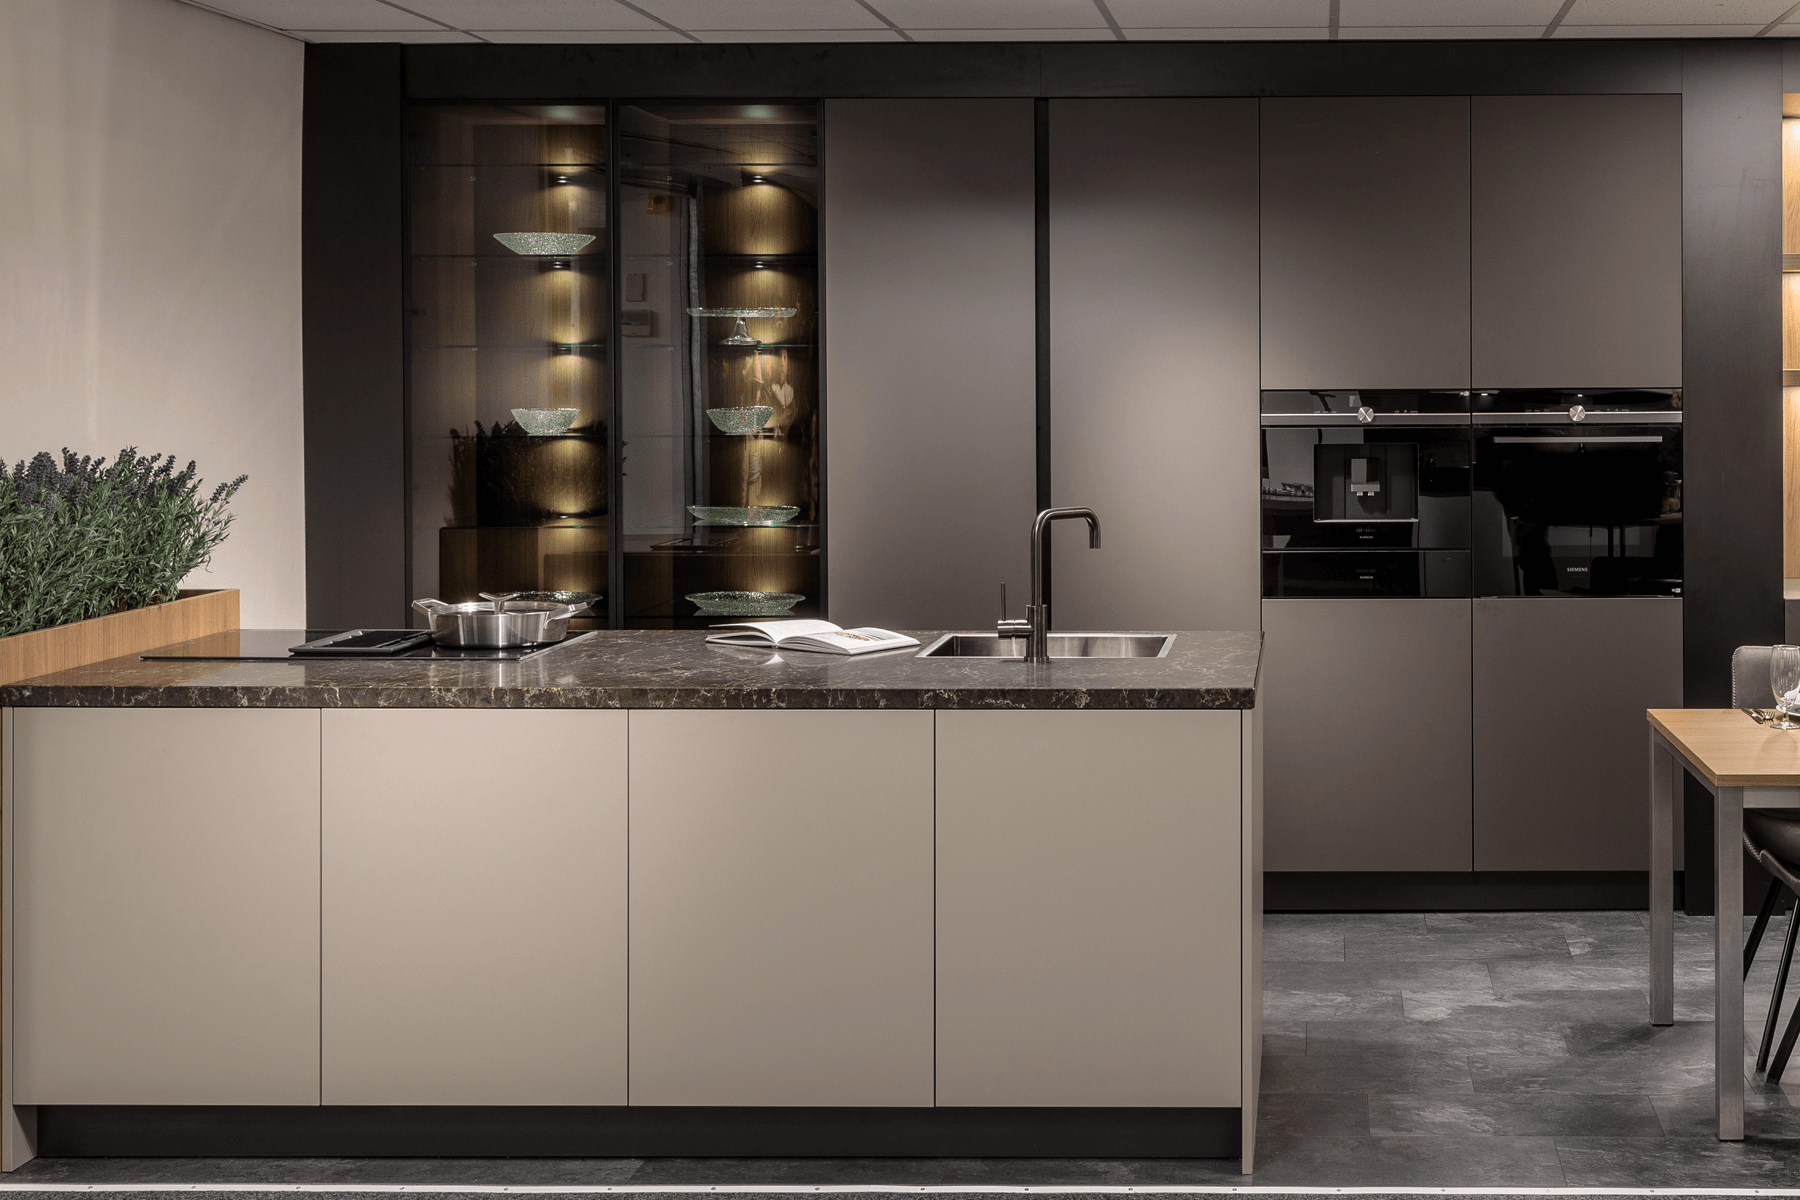 mild Blaze ergens Moderne keuken met luxe vitrinekasten | Budgetplan